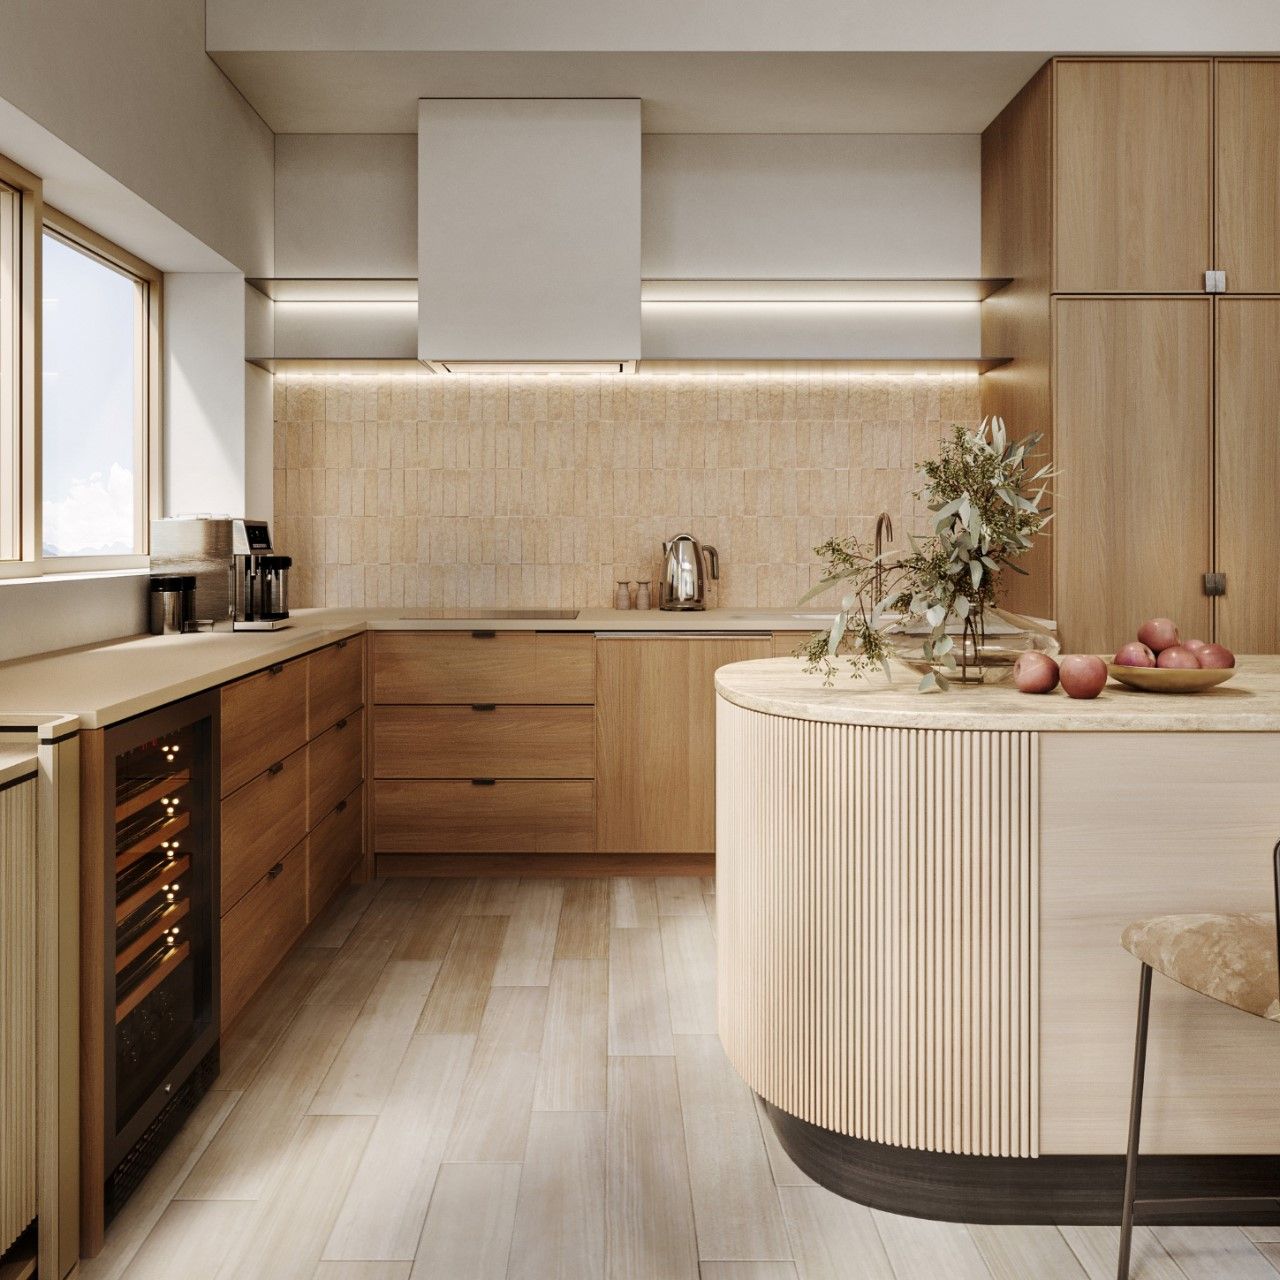 Hệ tủ bếp được thiết kế tối giản với tông màu gỗ sáng tích hợp thiết bị bếp thông minh